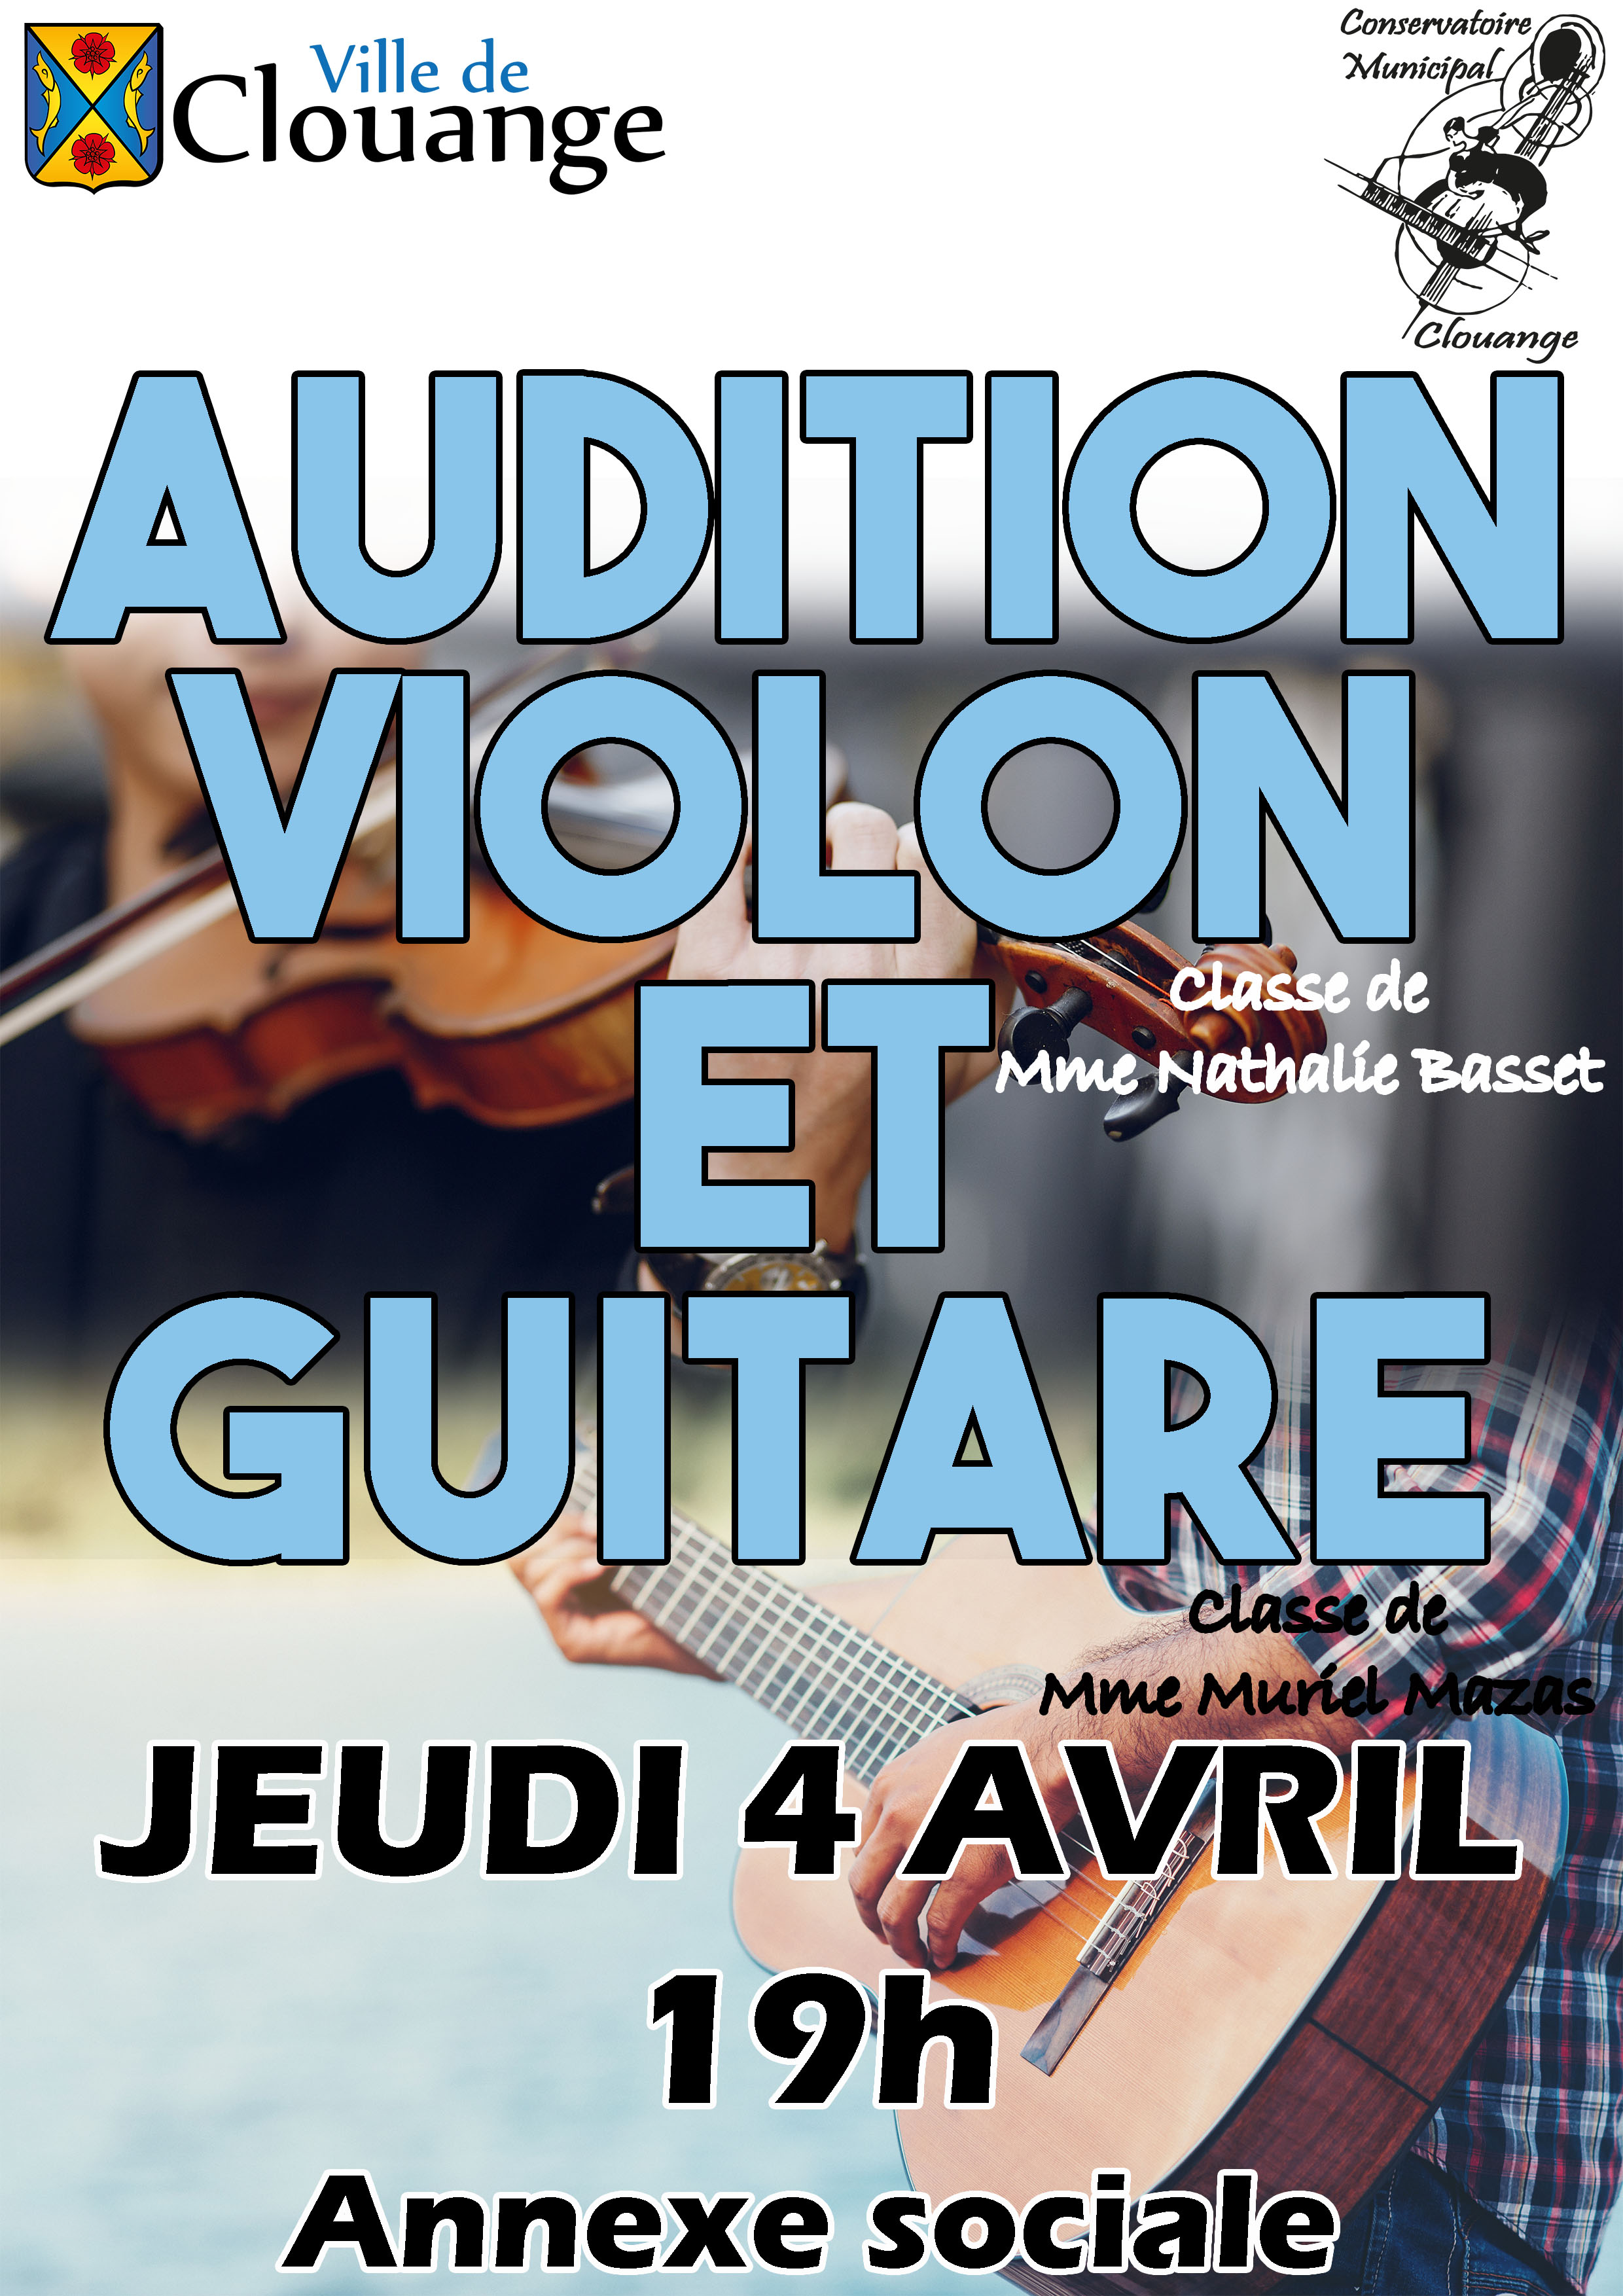 Audition de Guitare et Violon